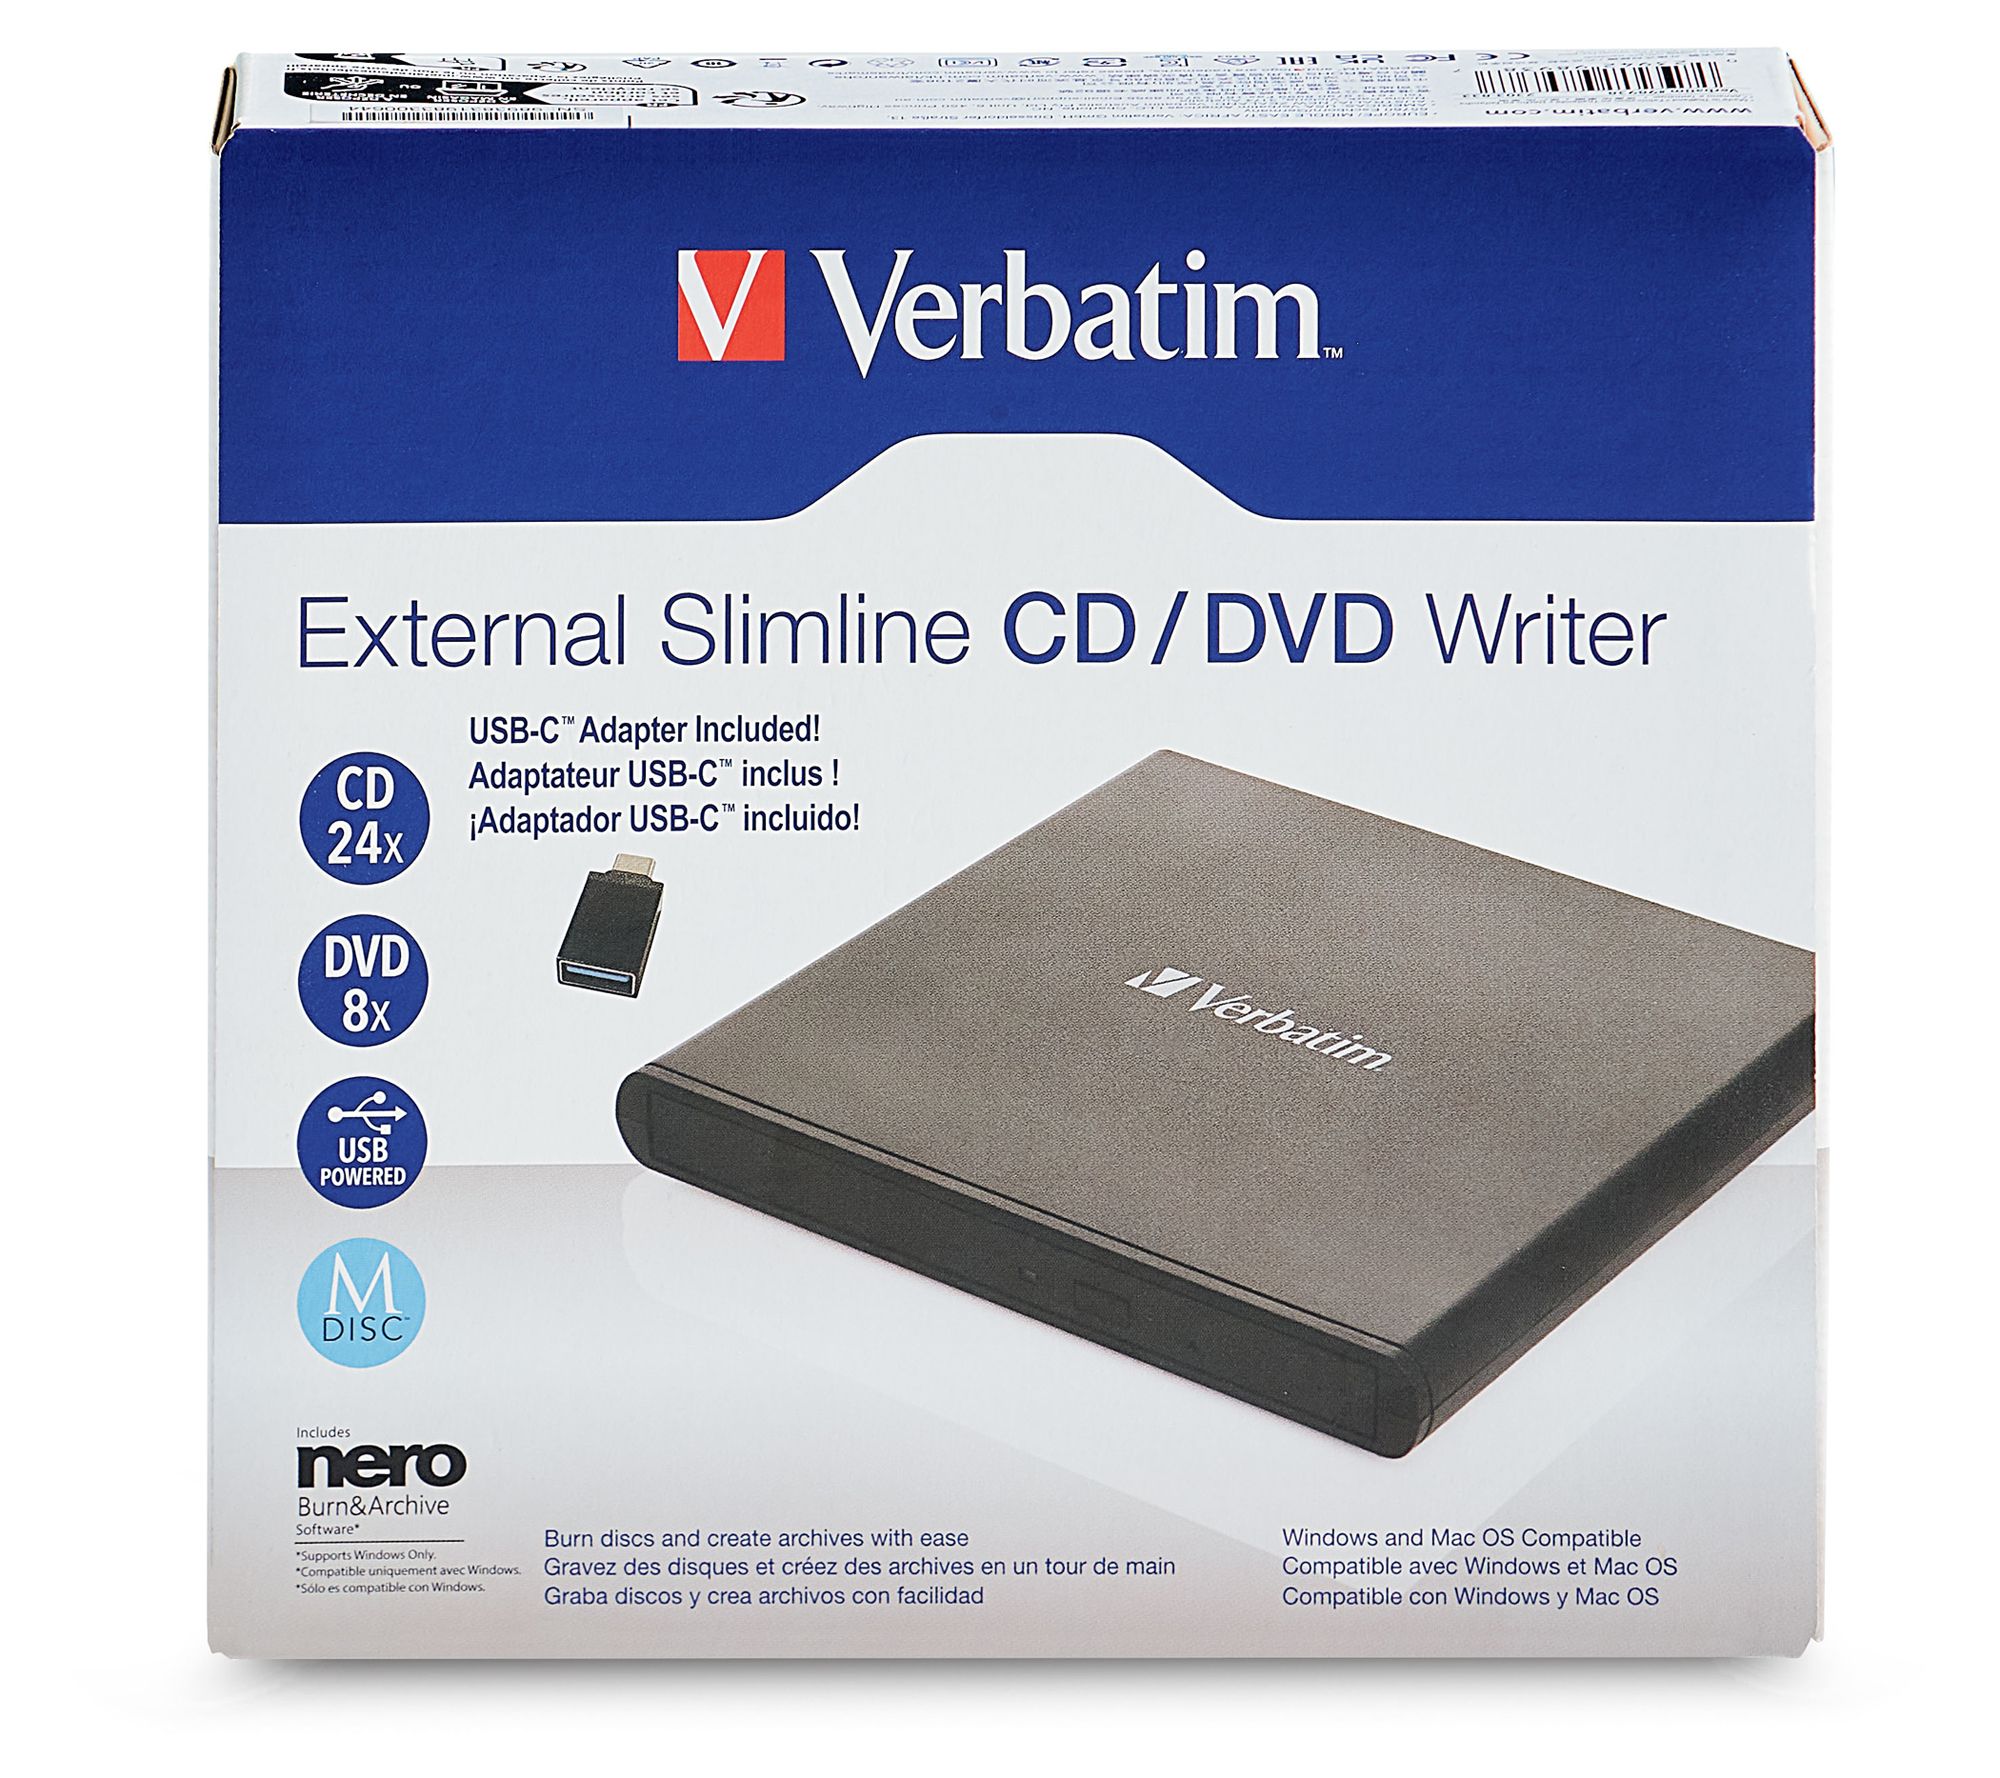 CD/DVD External